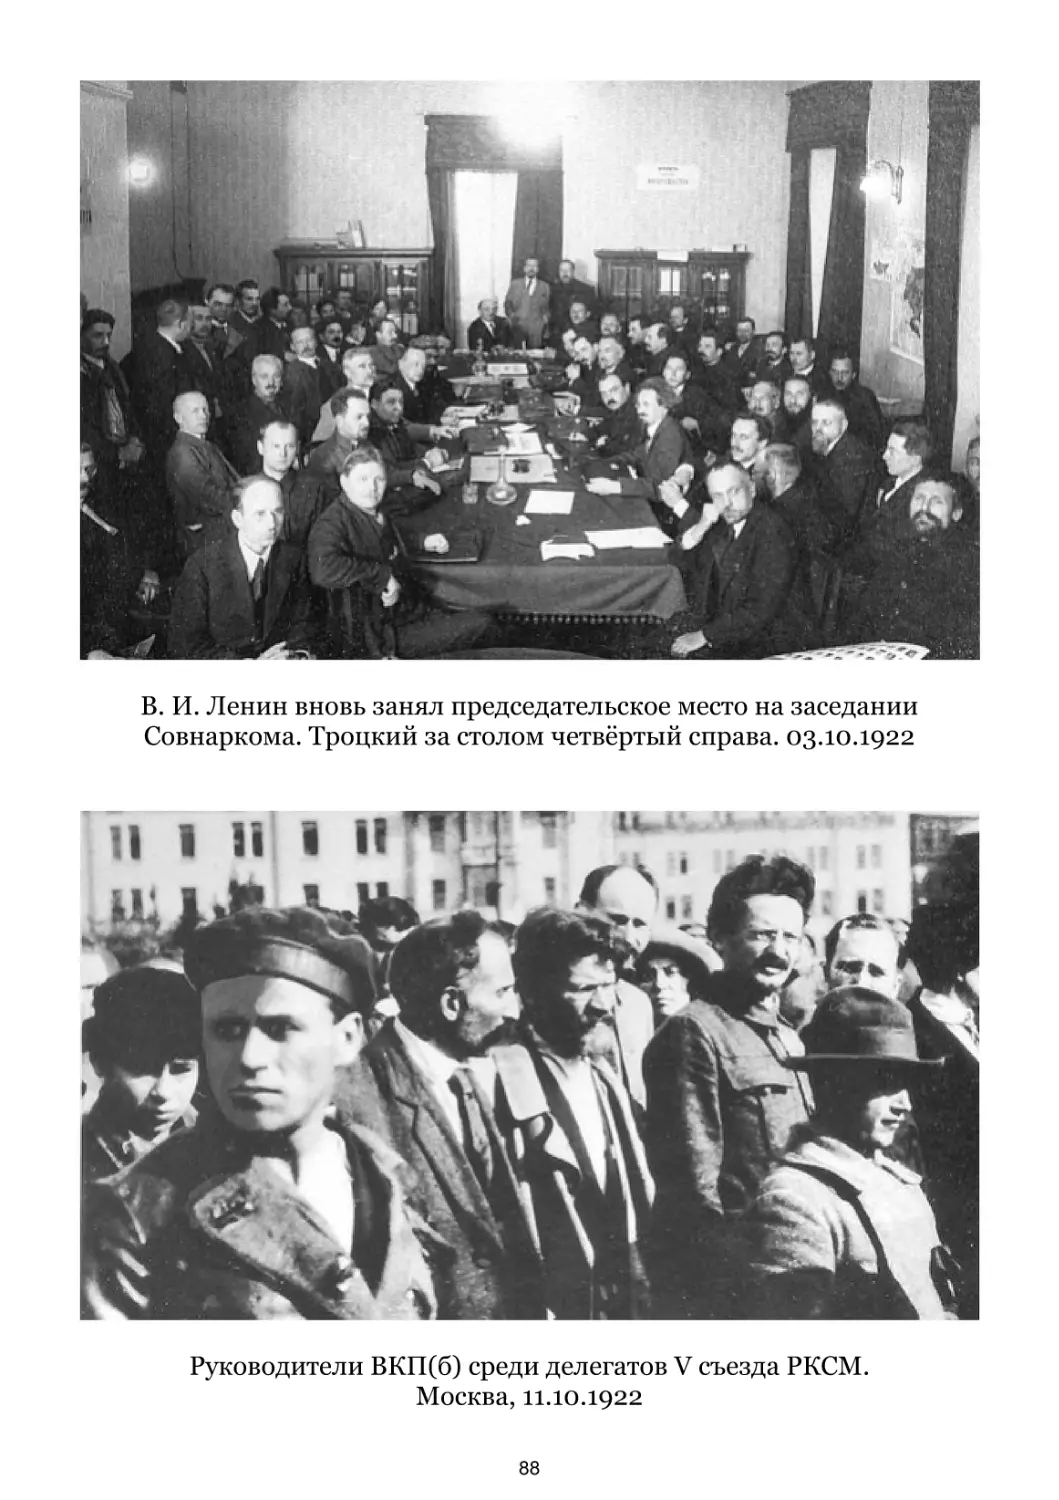 В. И. Ленин вновь занял председательское место на заседании Совнаркома. 03.10.1922